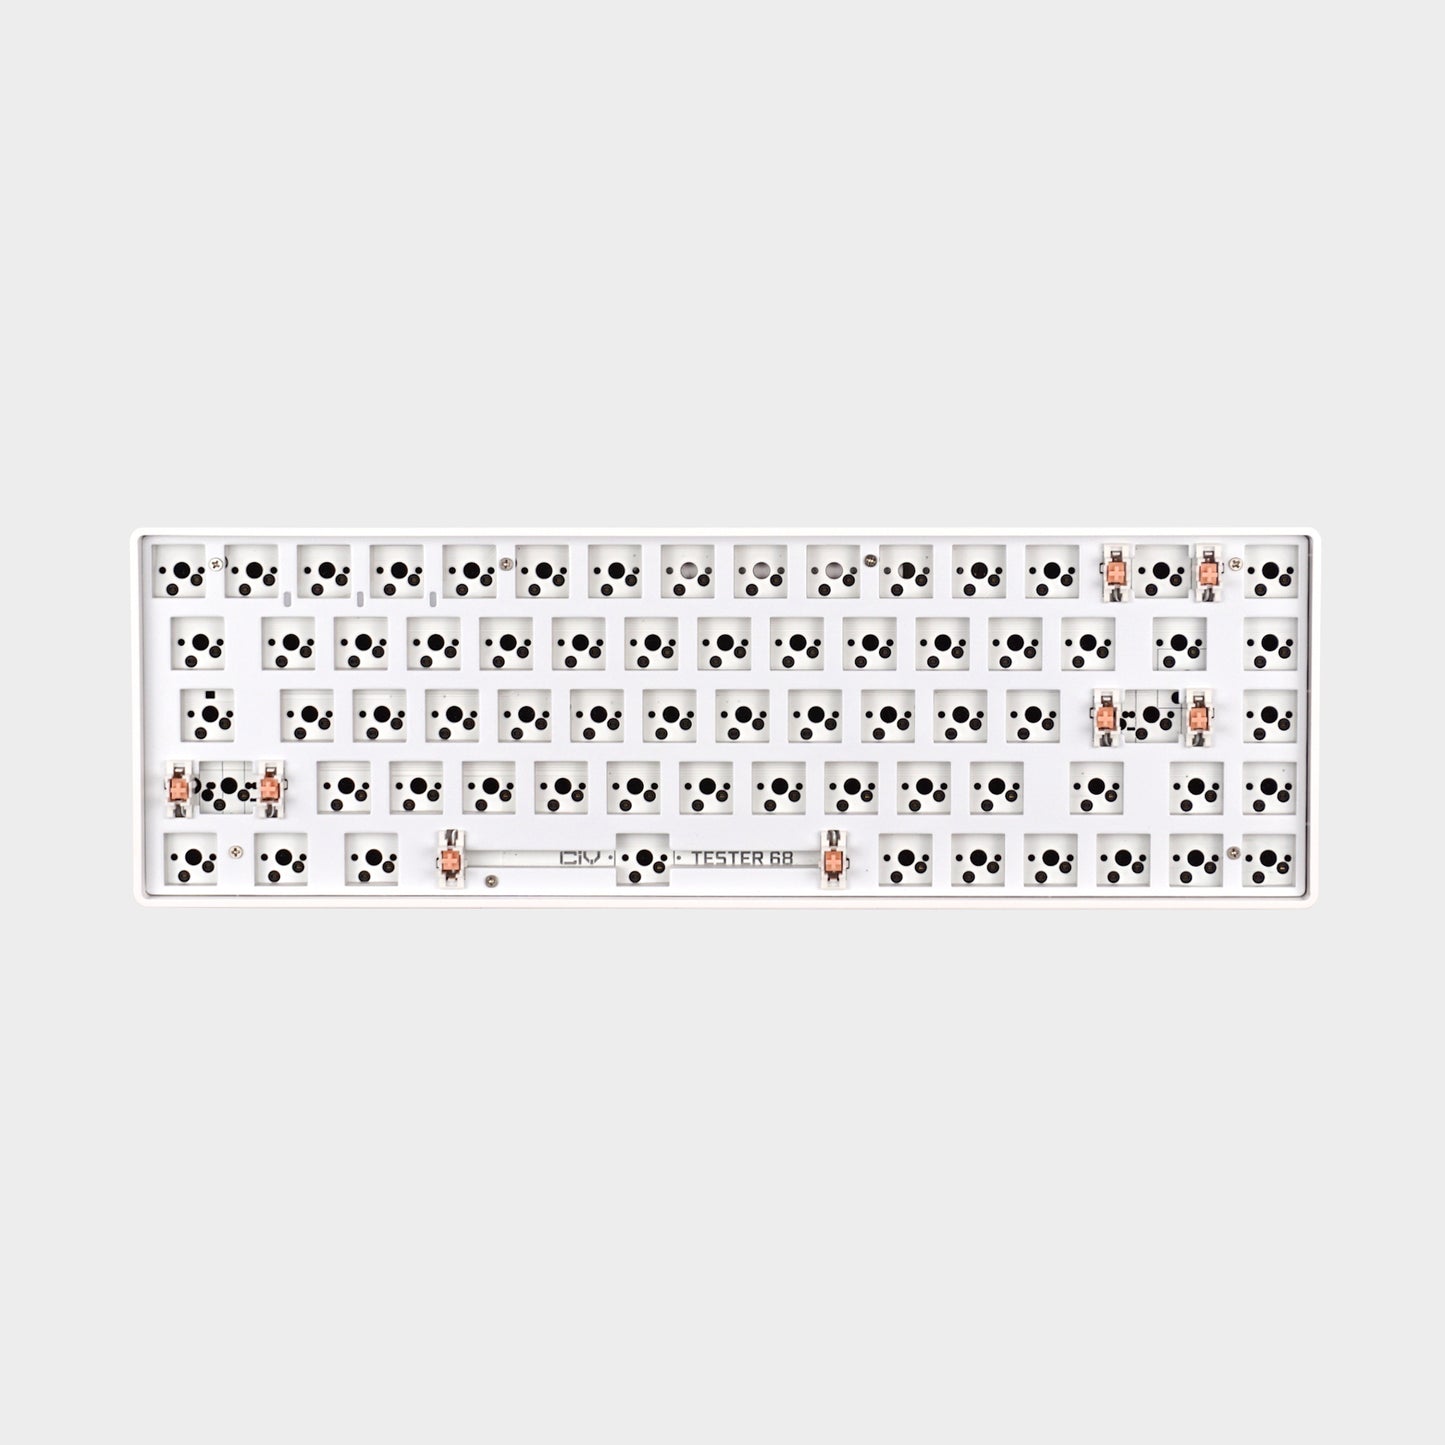 klawiatura mechaniczna 65% DIY Kit CIY Tester 68 Hot-Swap biała - Zestaw DIY barebones podświetlenie RGB